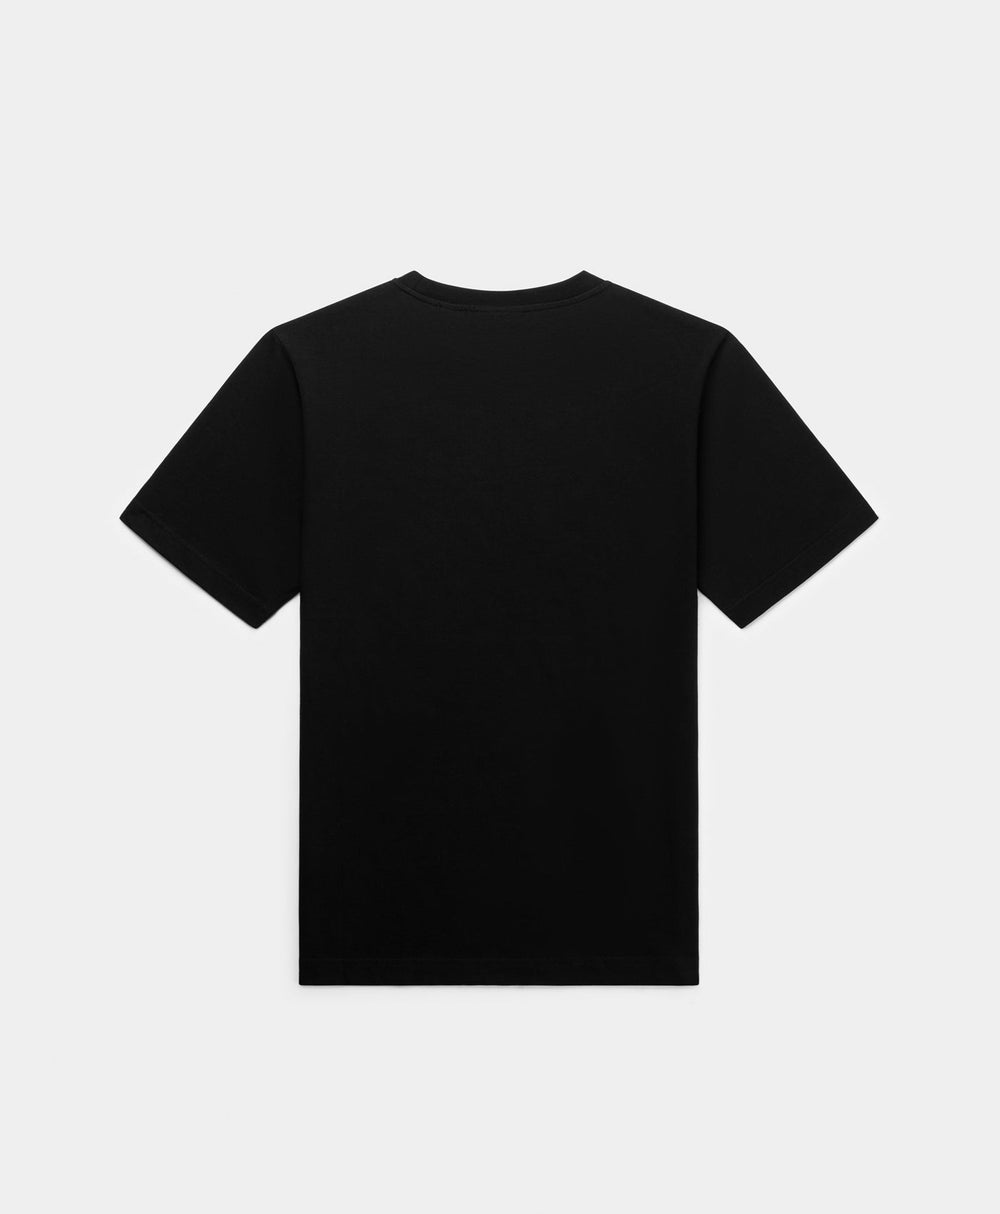 DP - Black Glow T-Shirt - Packshot - Rear